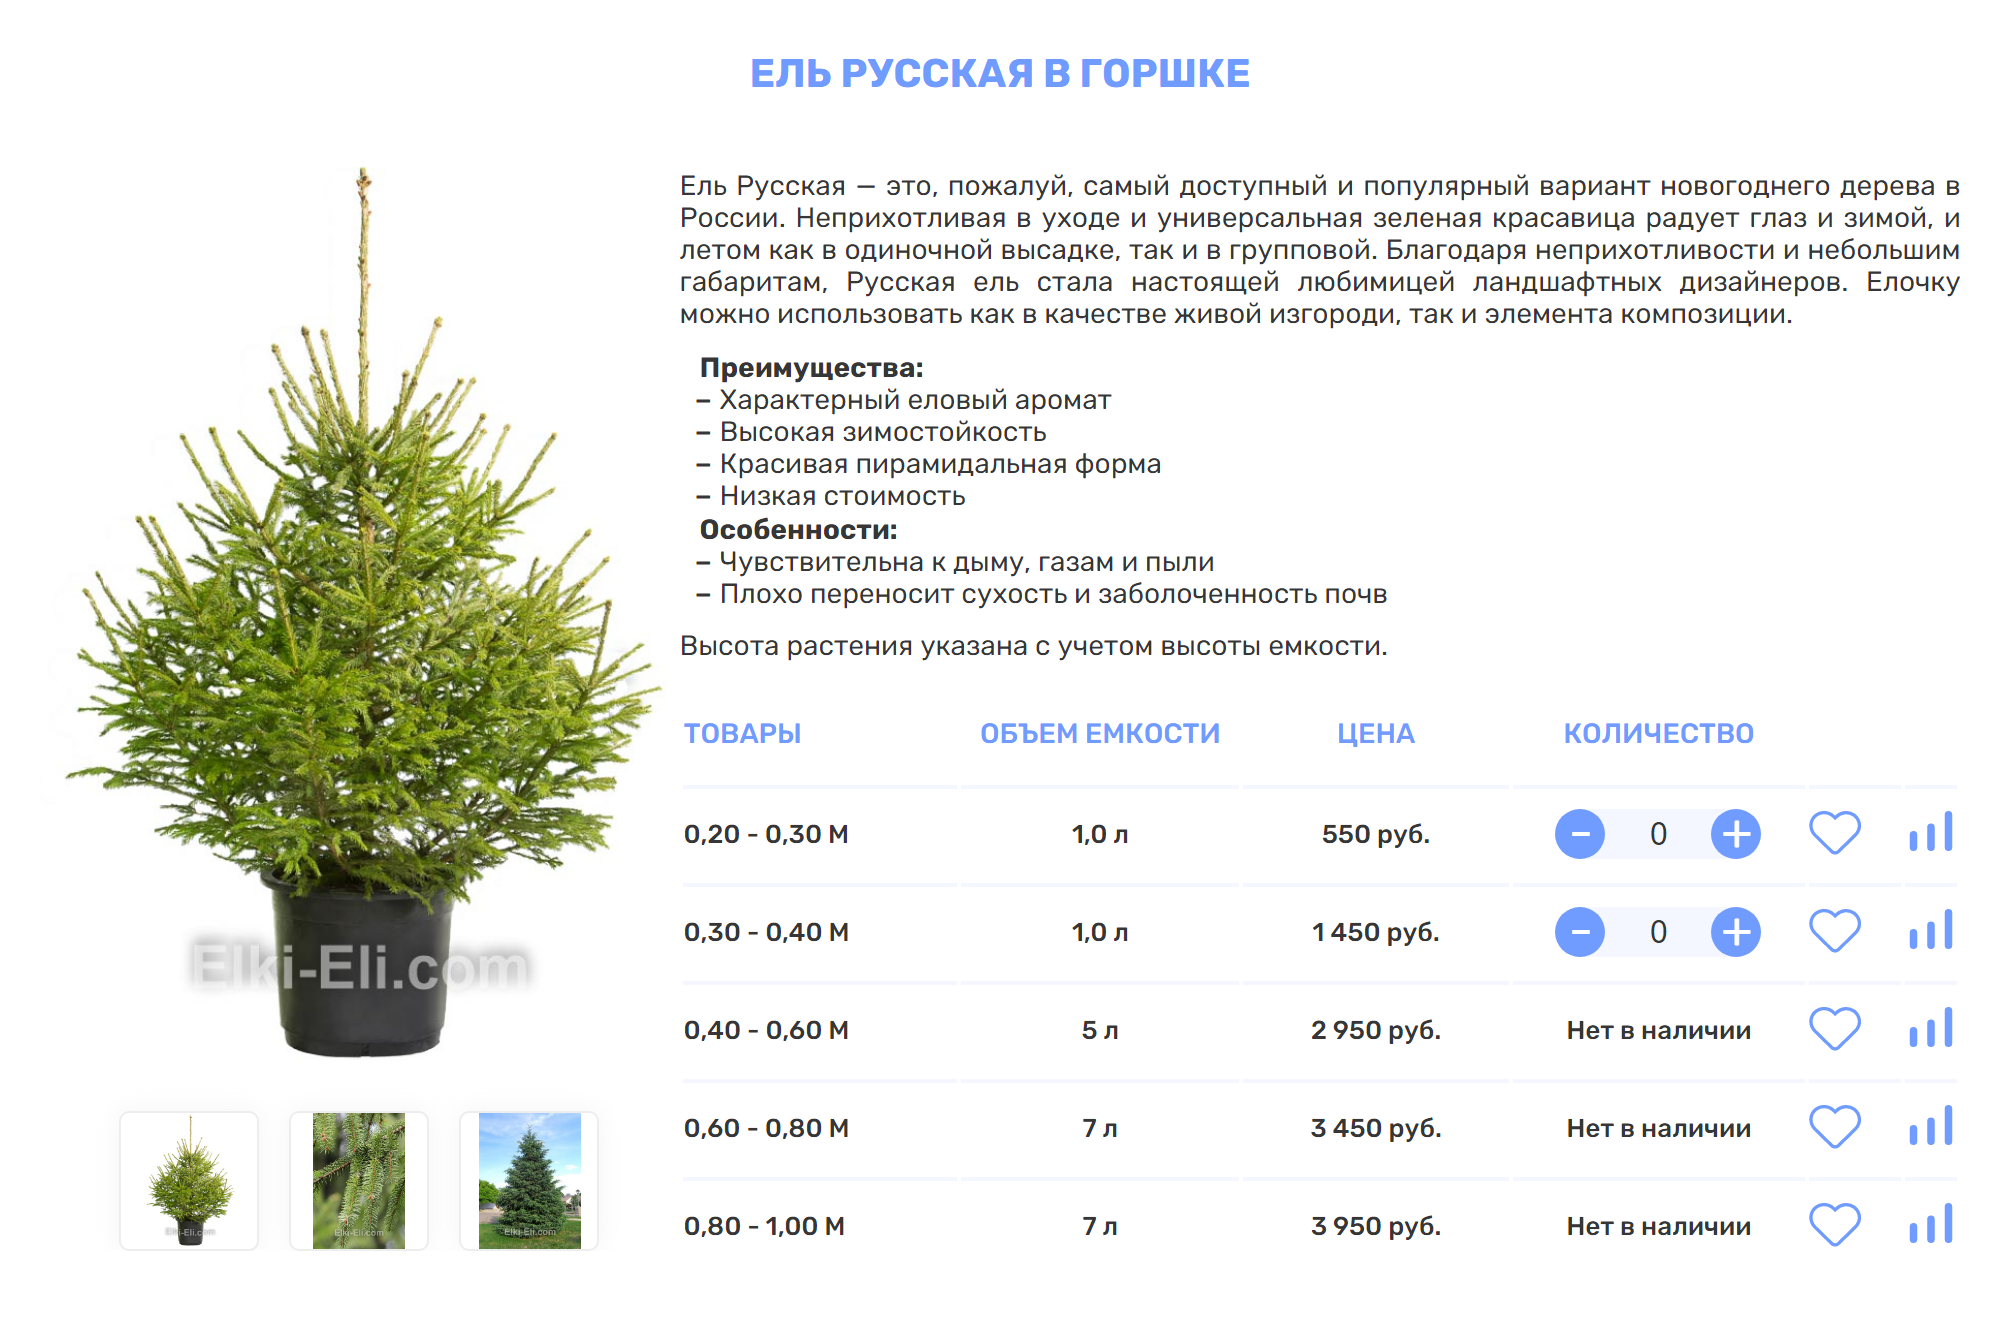 Можжевельник в горшке можно найти по сниженной цене. Источник: luxuryplants.ru